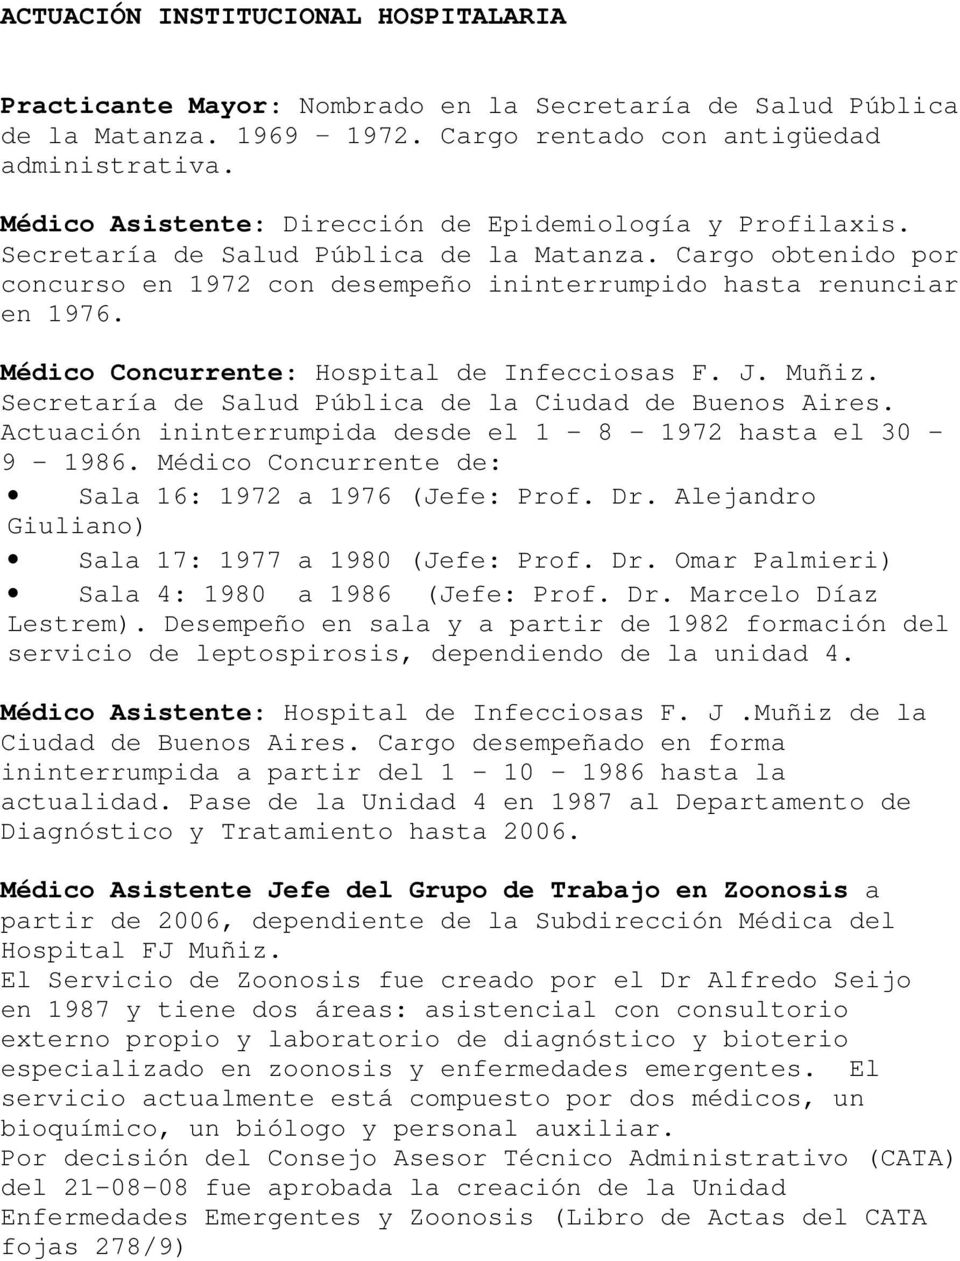 Médico Concurrente: Hospital de Infecciosas F. J. Muñiz. Secretaría de Salud Pública de la Ciudad de Buenos Aires. Actuación ininterrumpida desde el 1-8 - 1972 hasta el 30-9 - 1986.